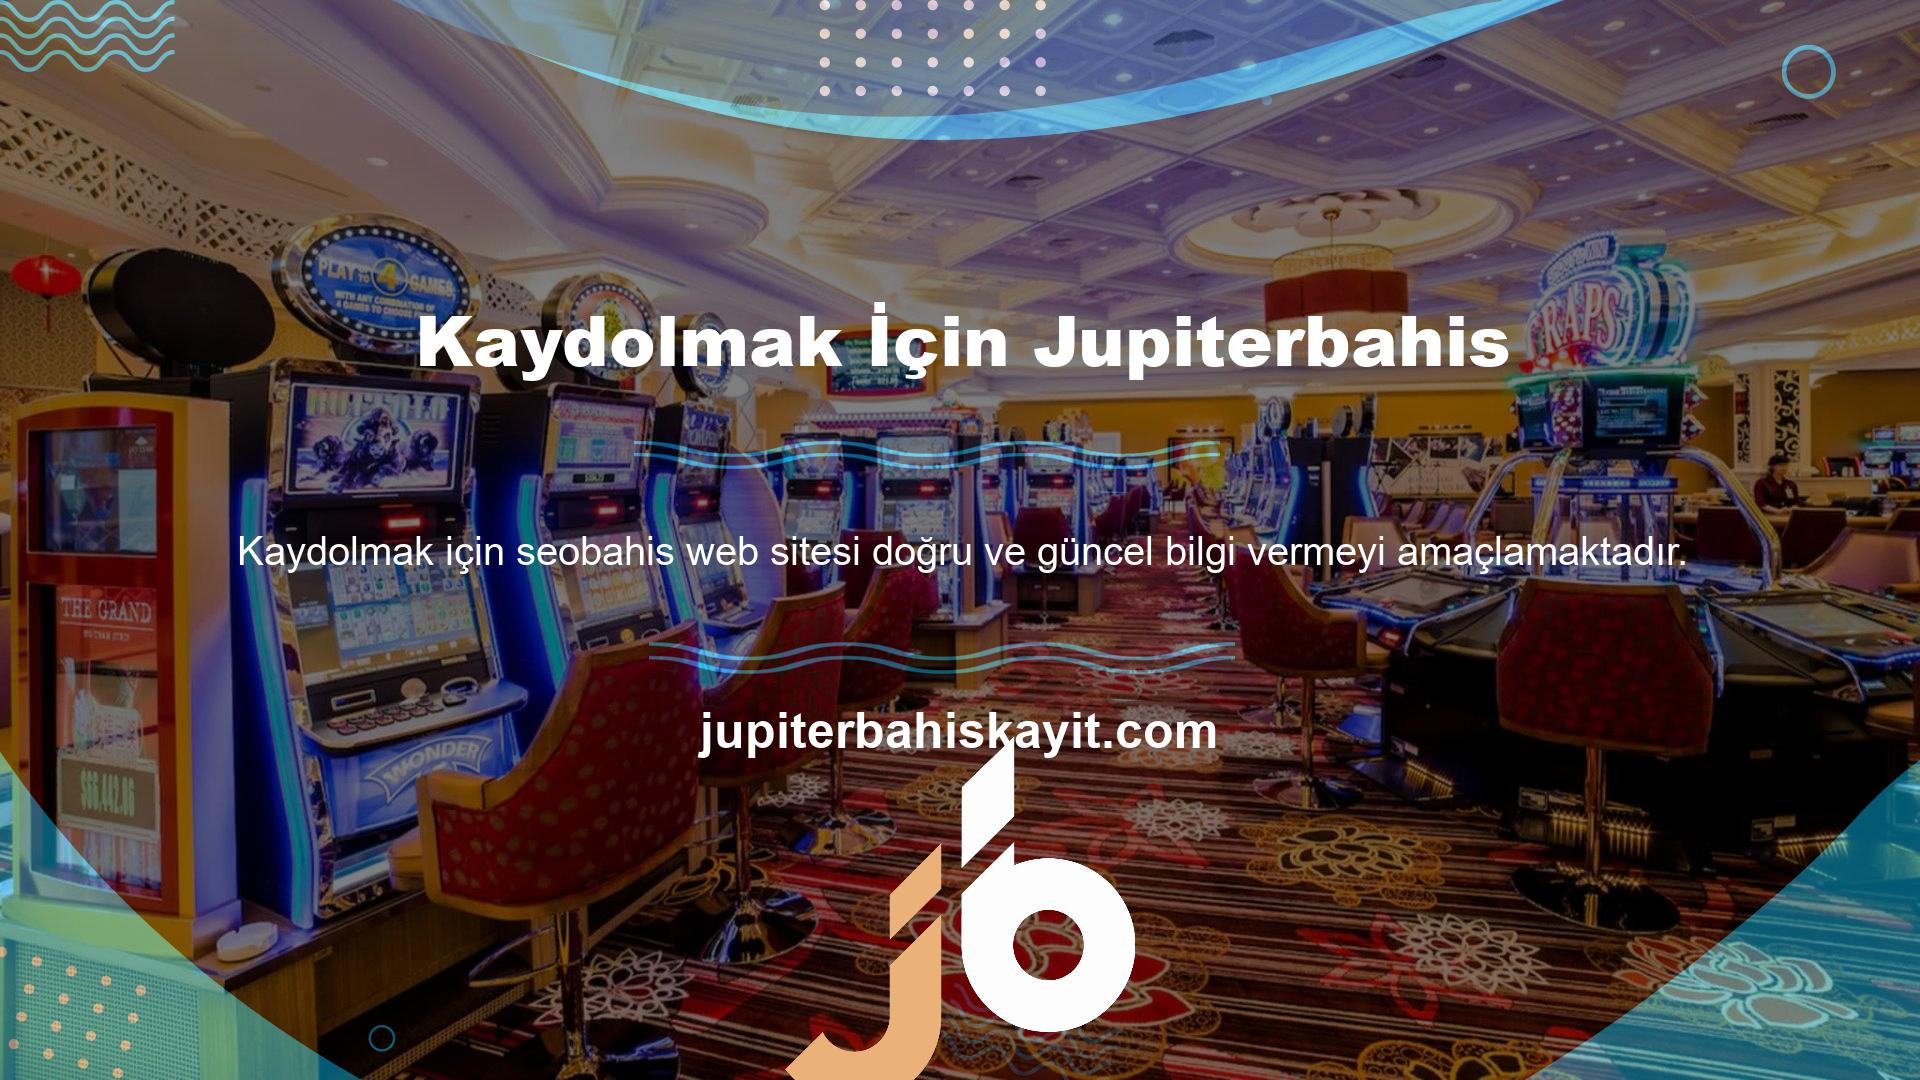 Jupiterbahis adı altında kurulmuş ve diğer yasa dışı ve lisanssız çevrimiçi casinolara yönlendiren birçok web sitesi bulunmaktadır